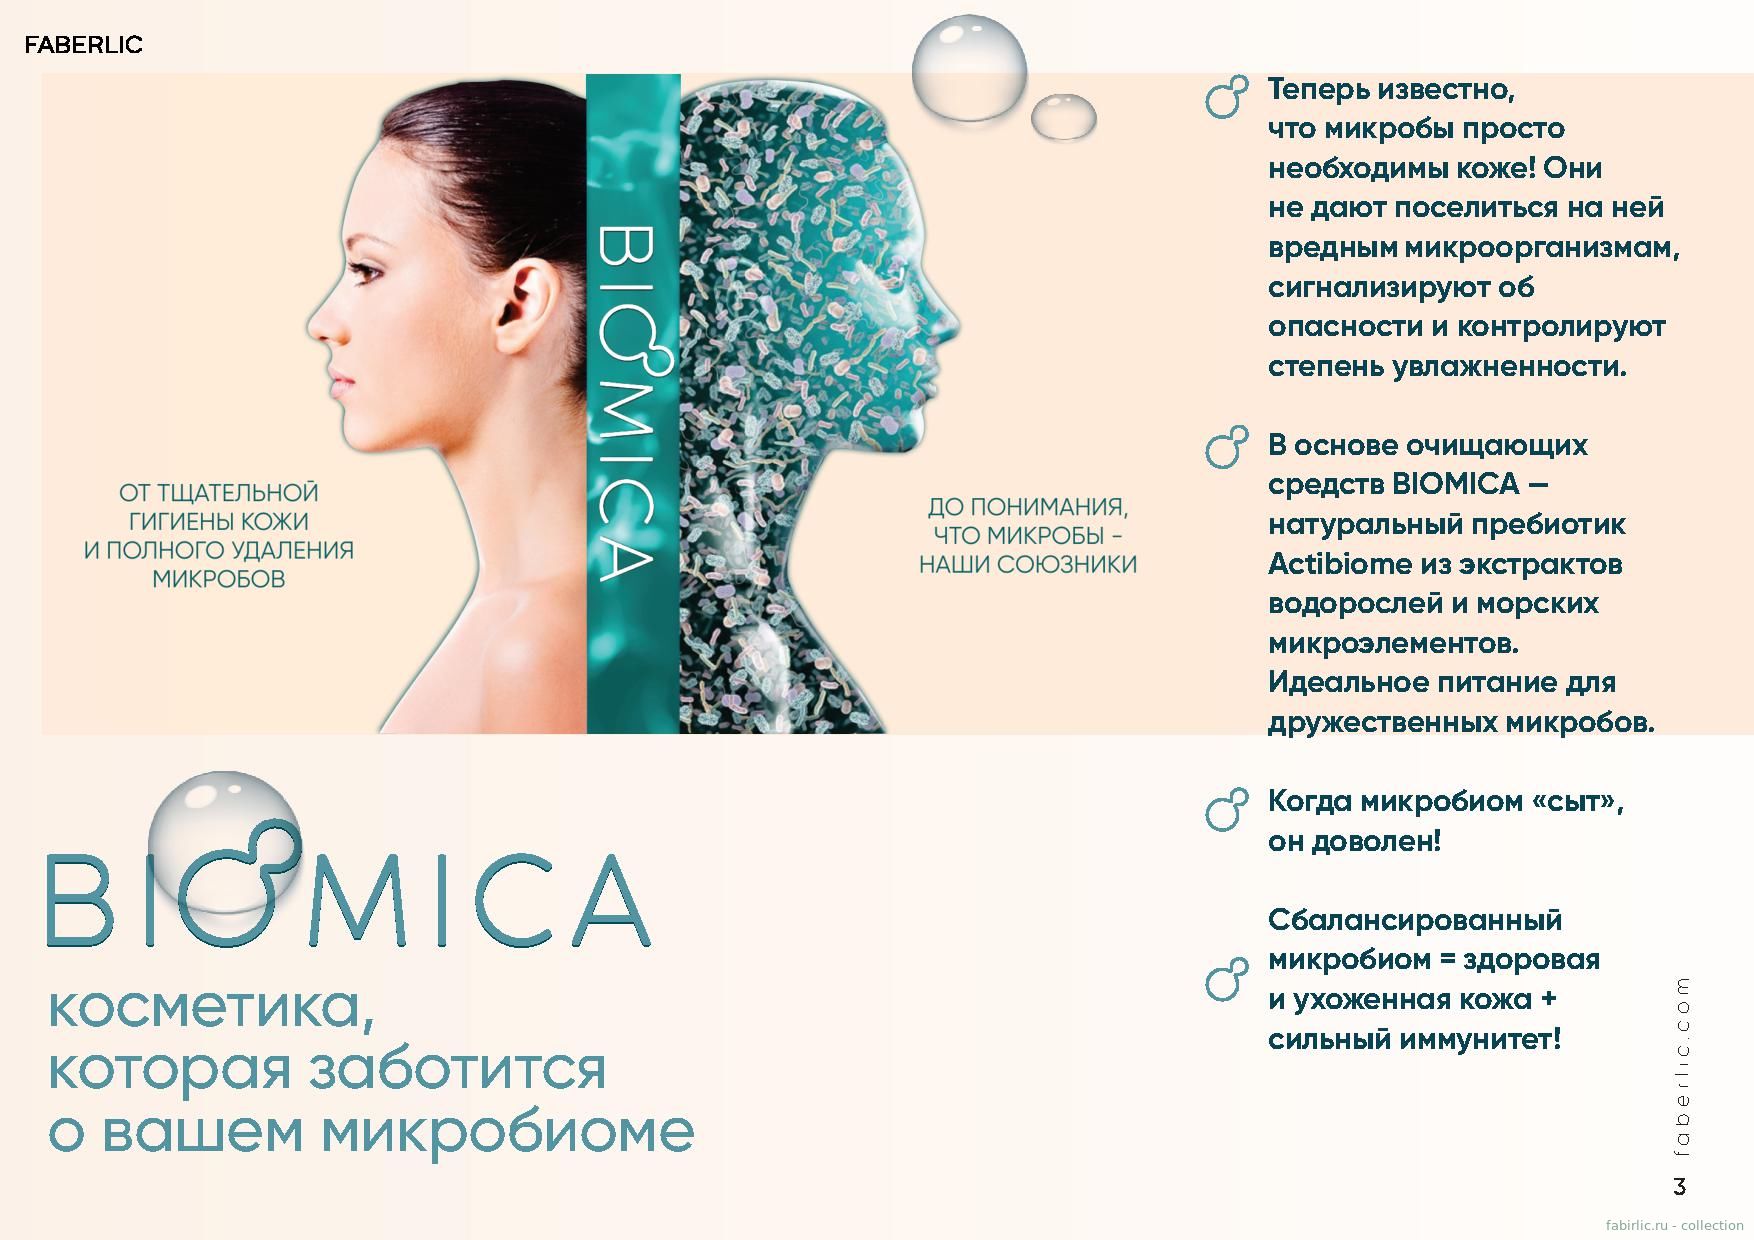 Biomica - косметика, которая заботится о вашем микробиоме